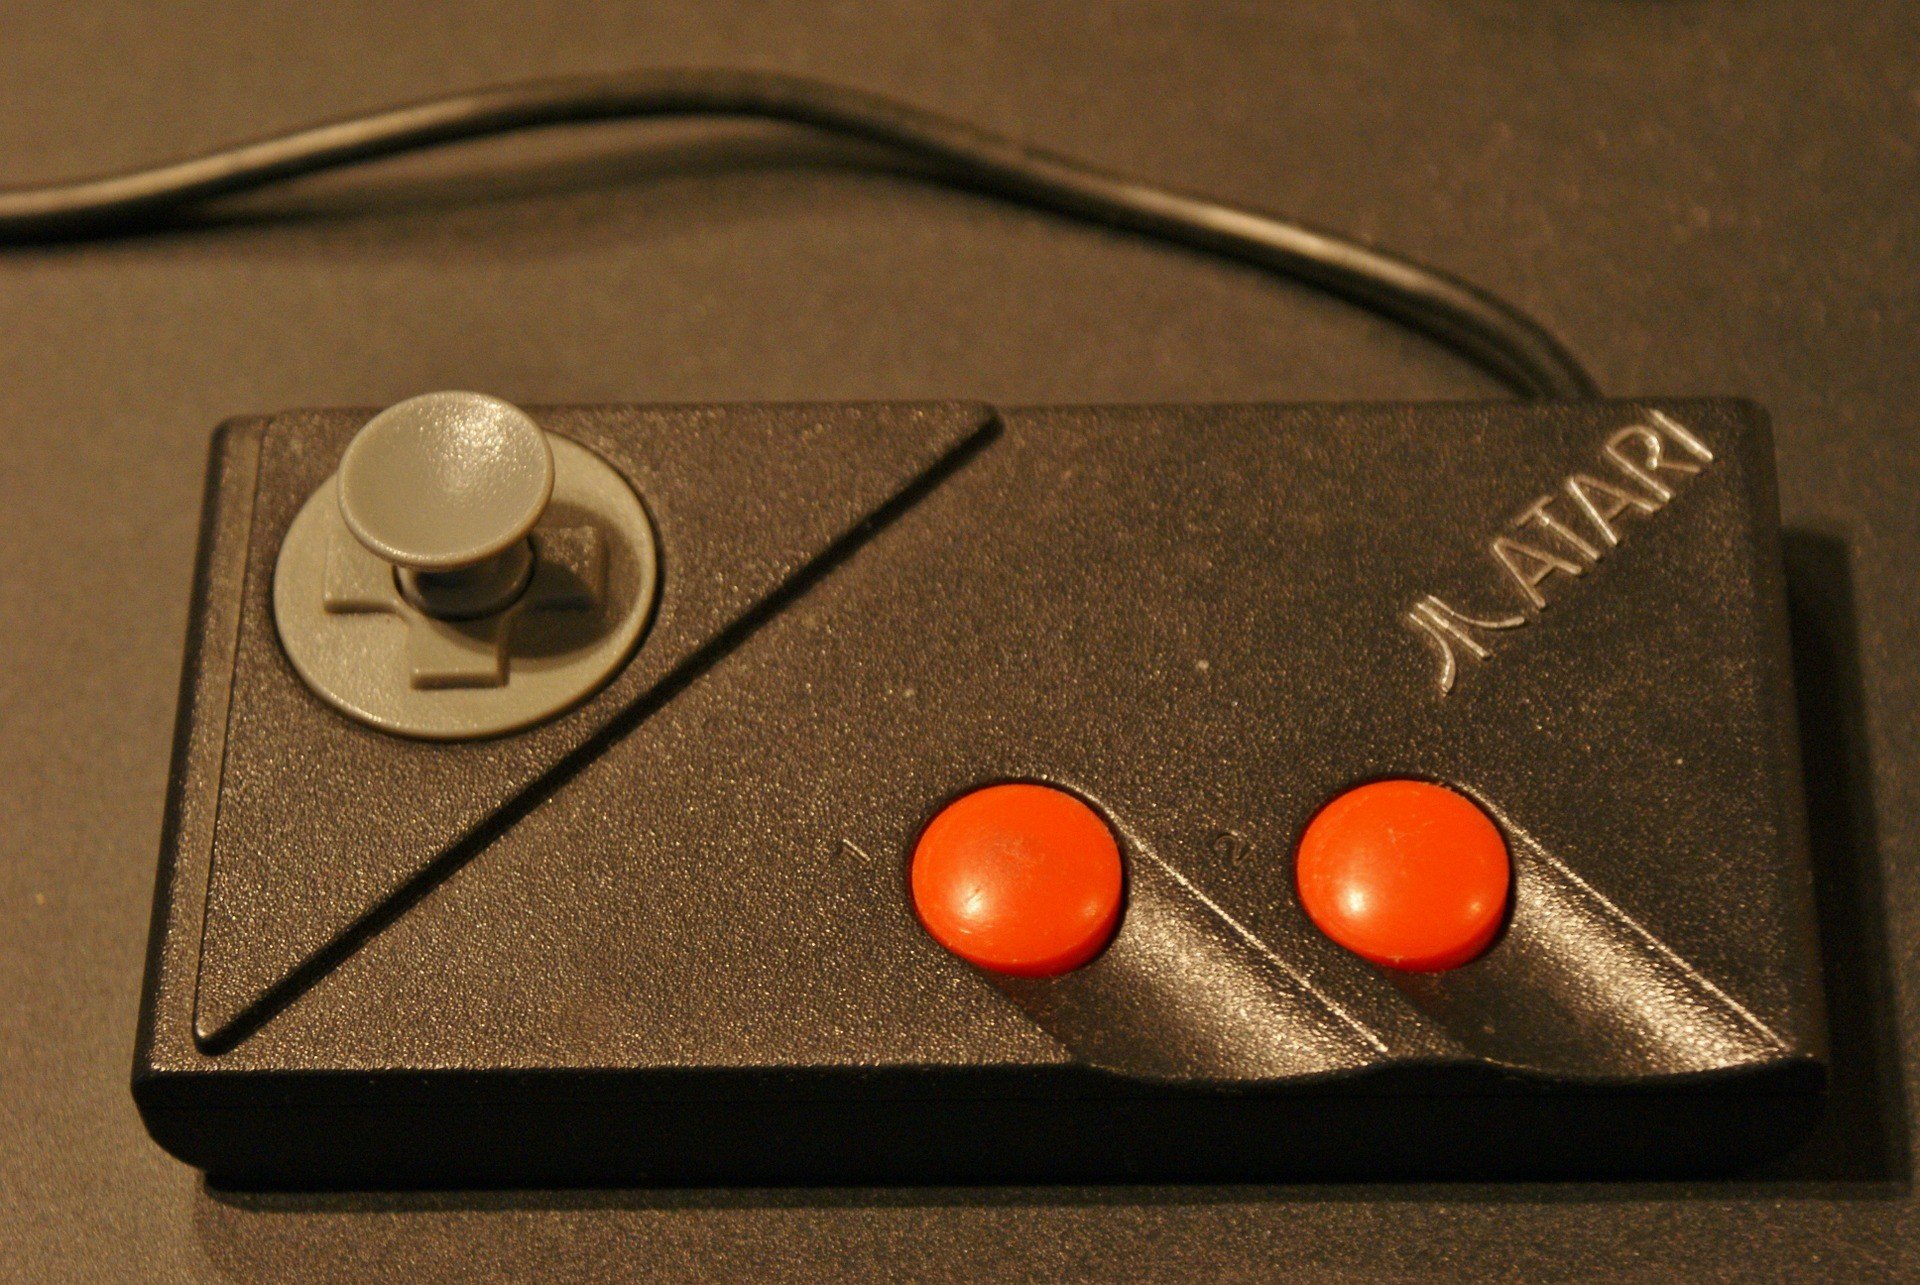 Atari game controller